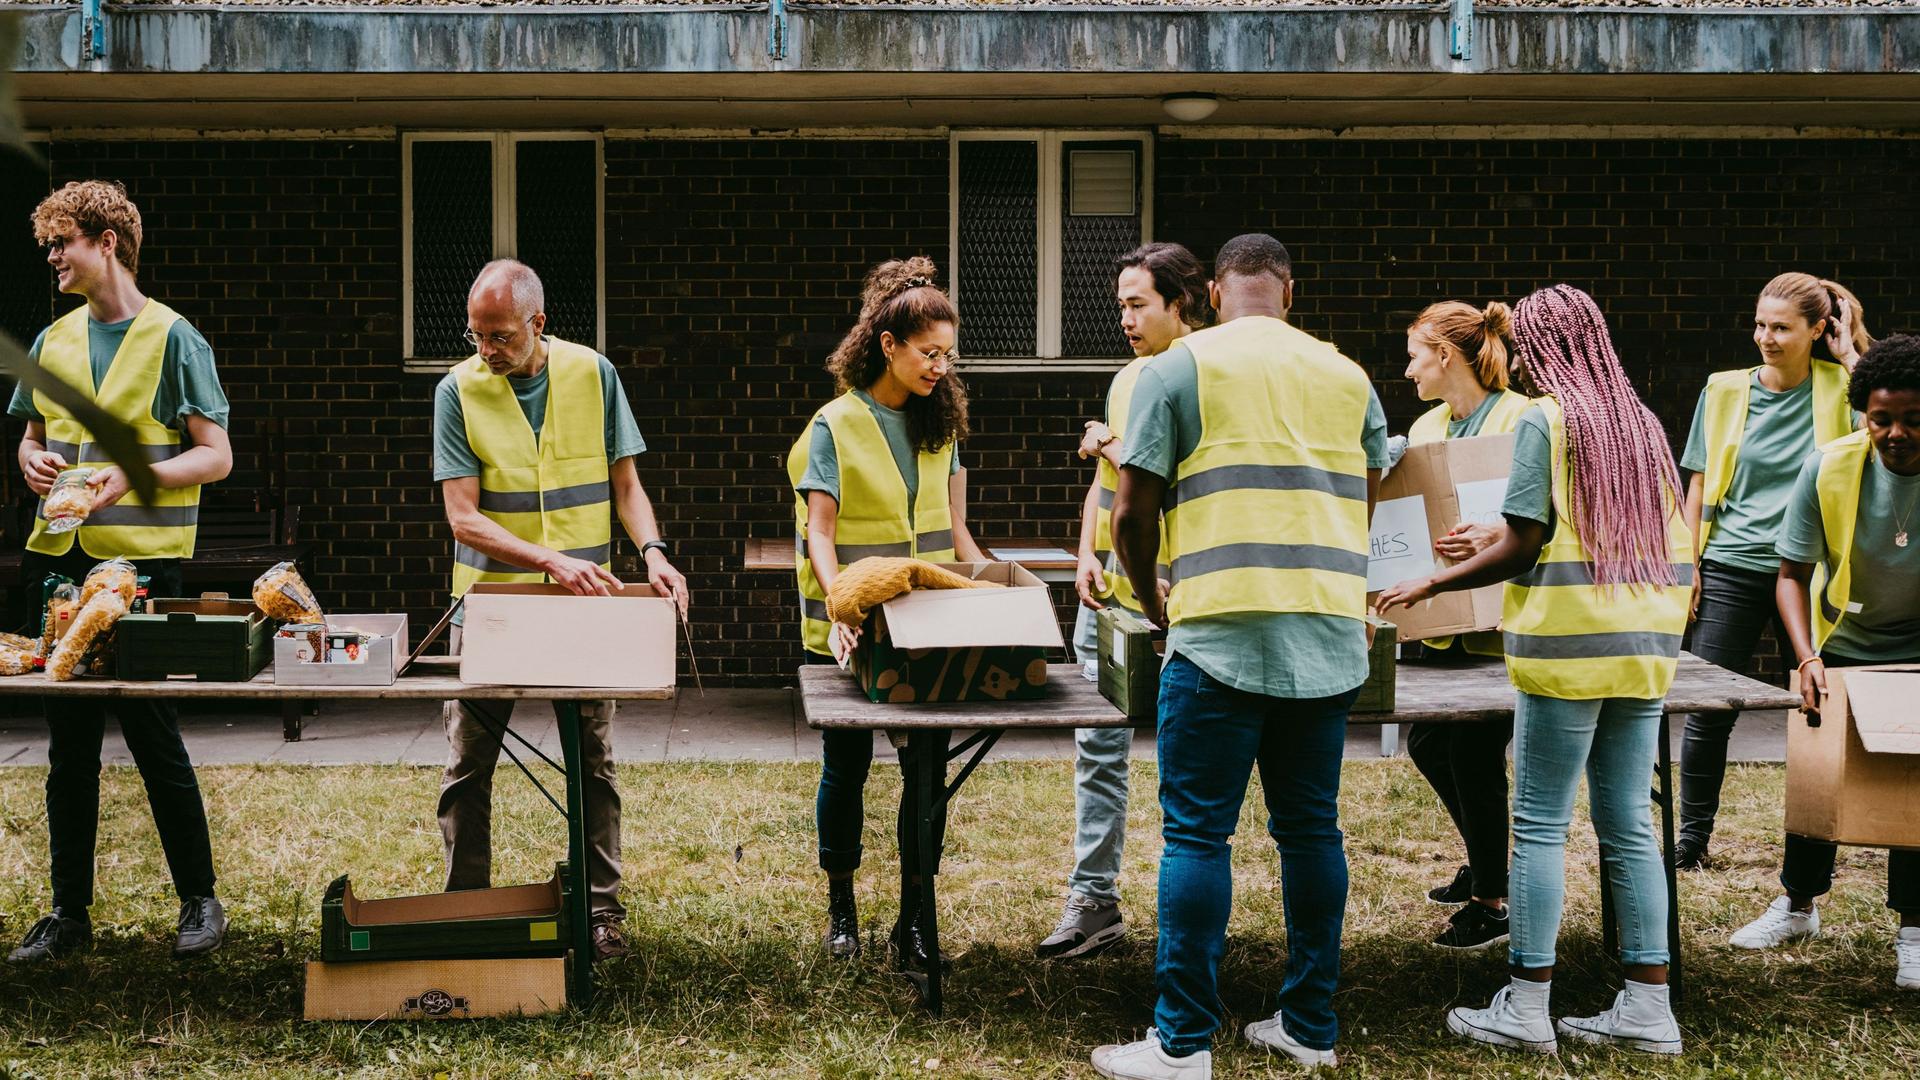 Freiwillige Helfer mit gelben Warnwesten stehen vor Kisten, die auf Tischen stehen, in einem Garten.